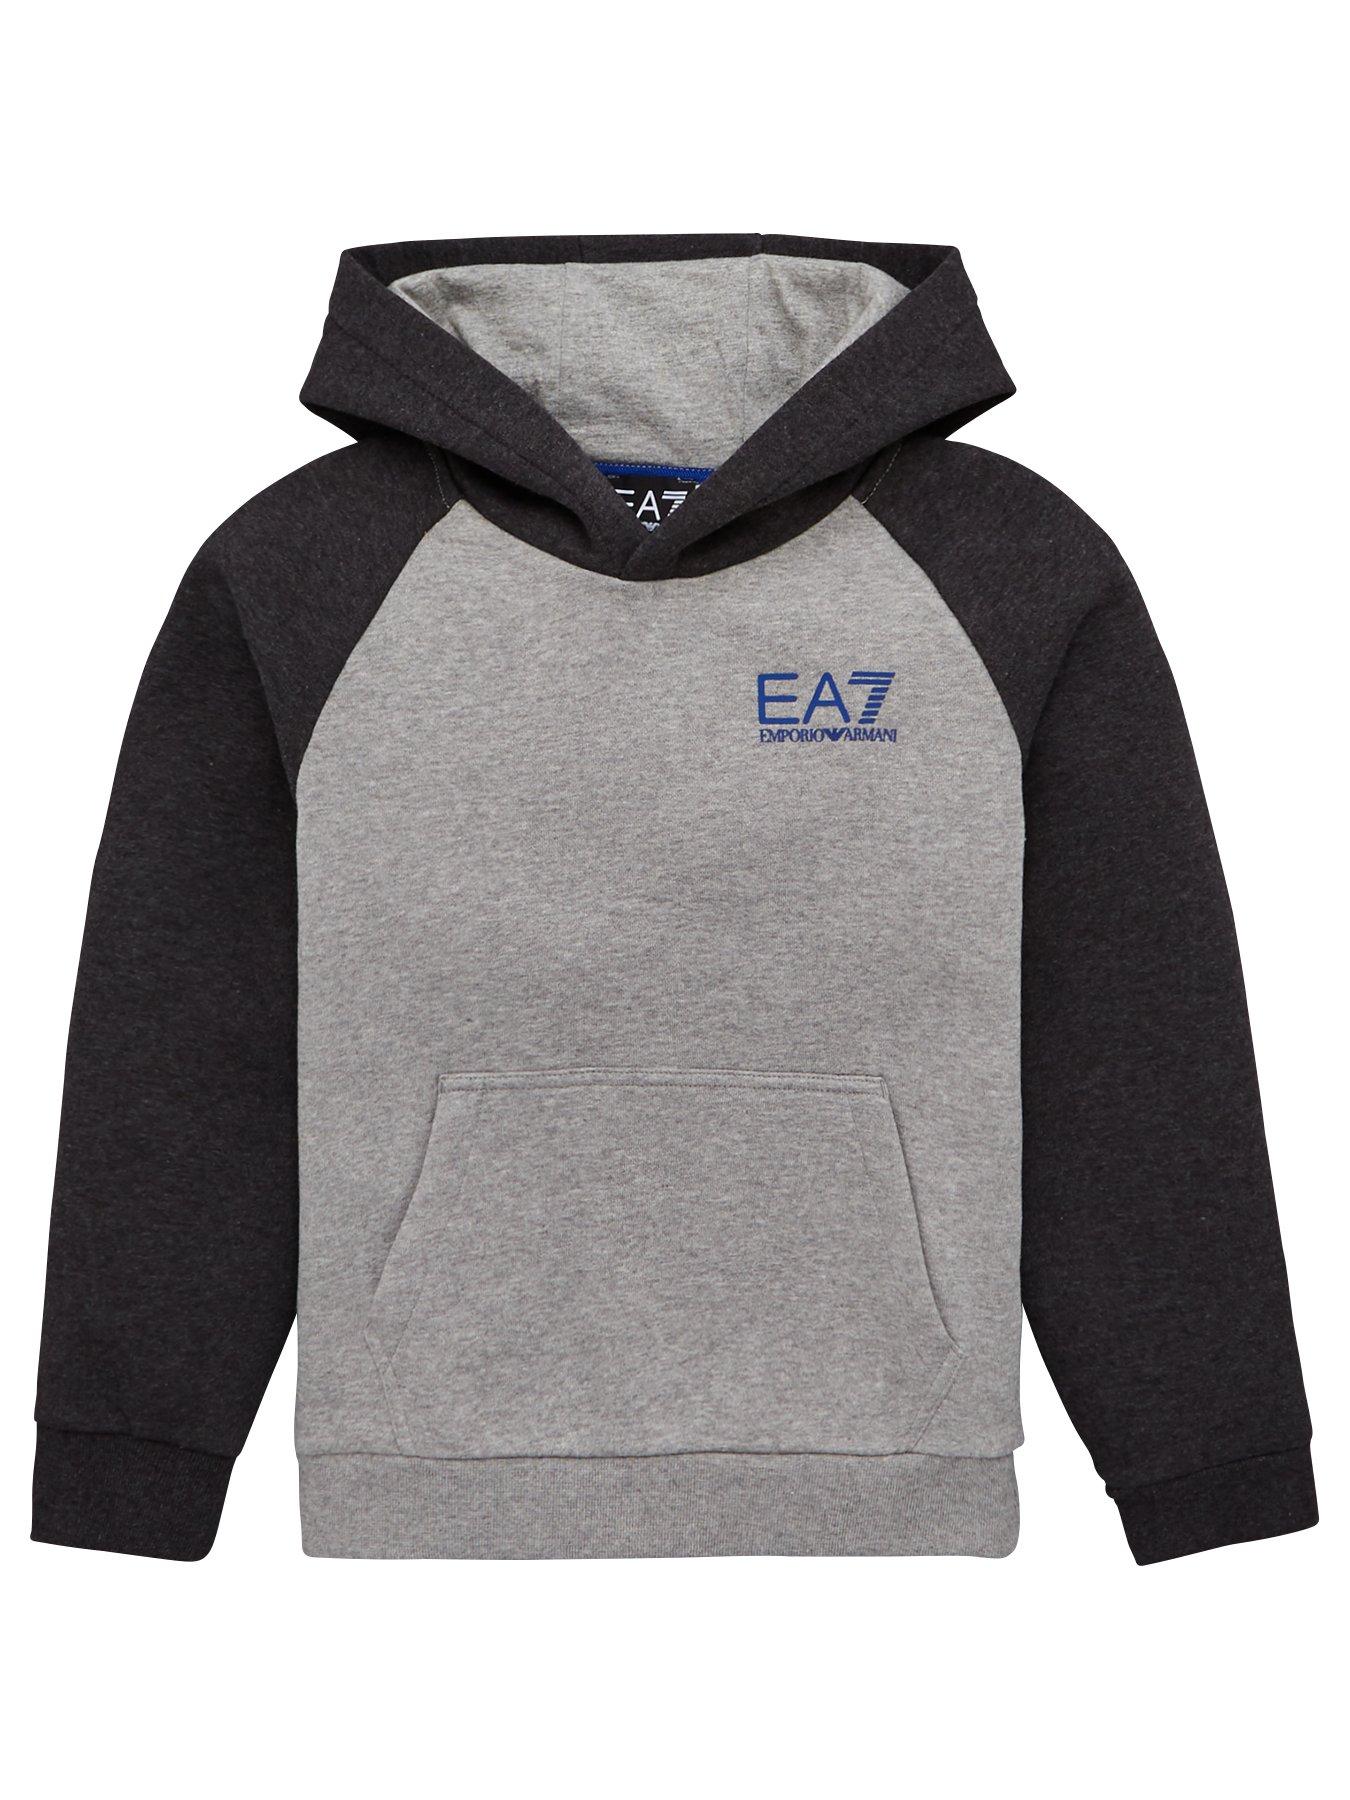 ea7 boys hoodie